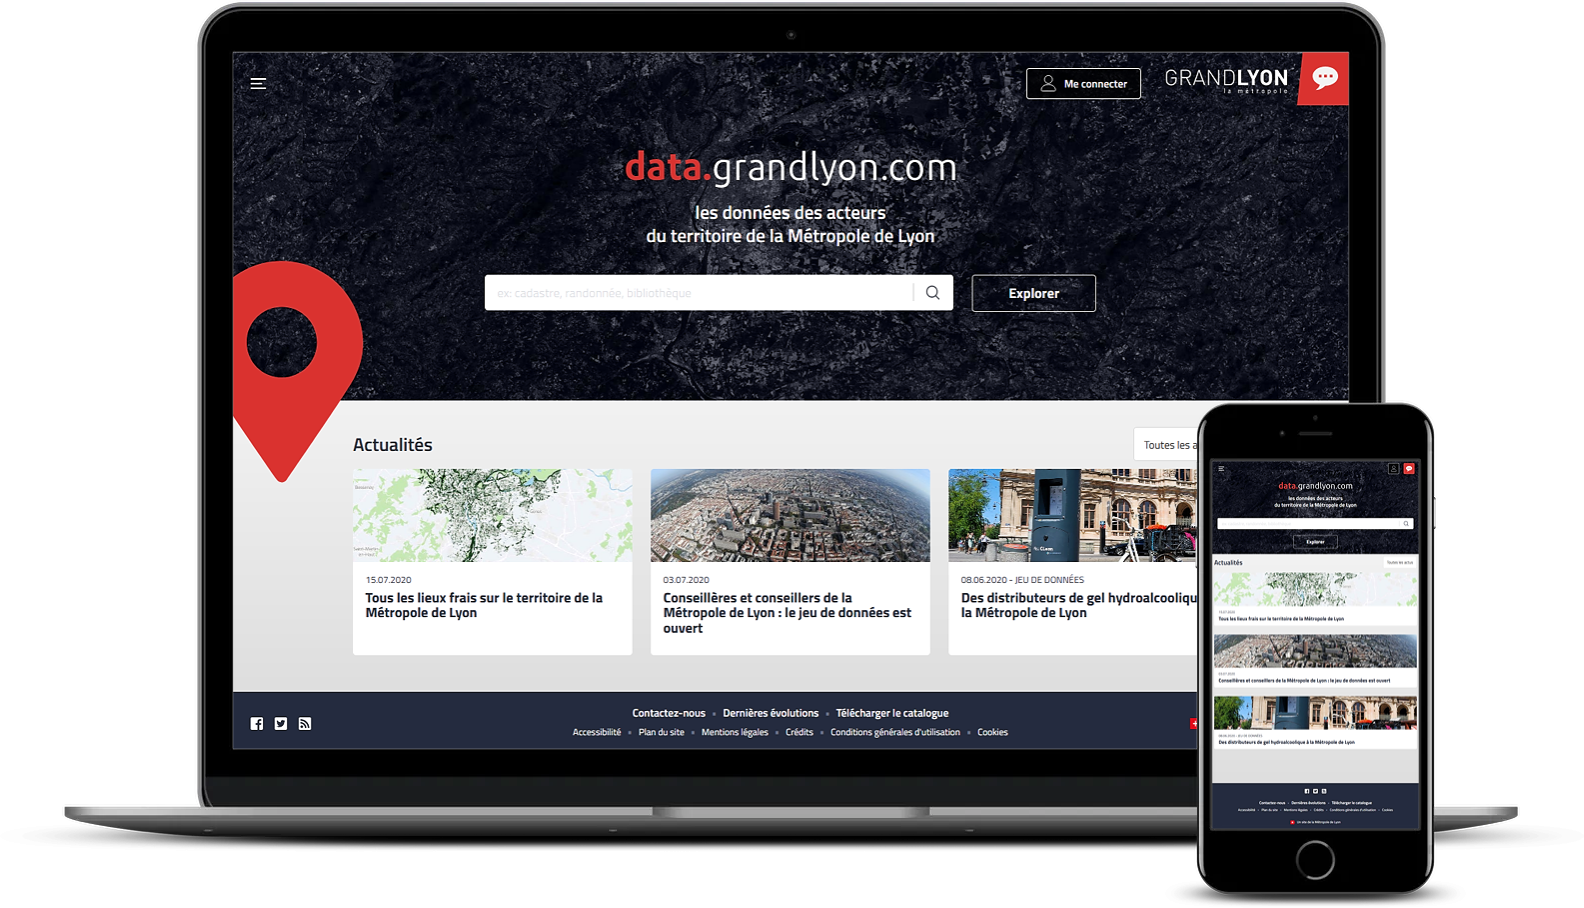 plateforme data.grandlyon.com en français